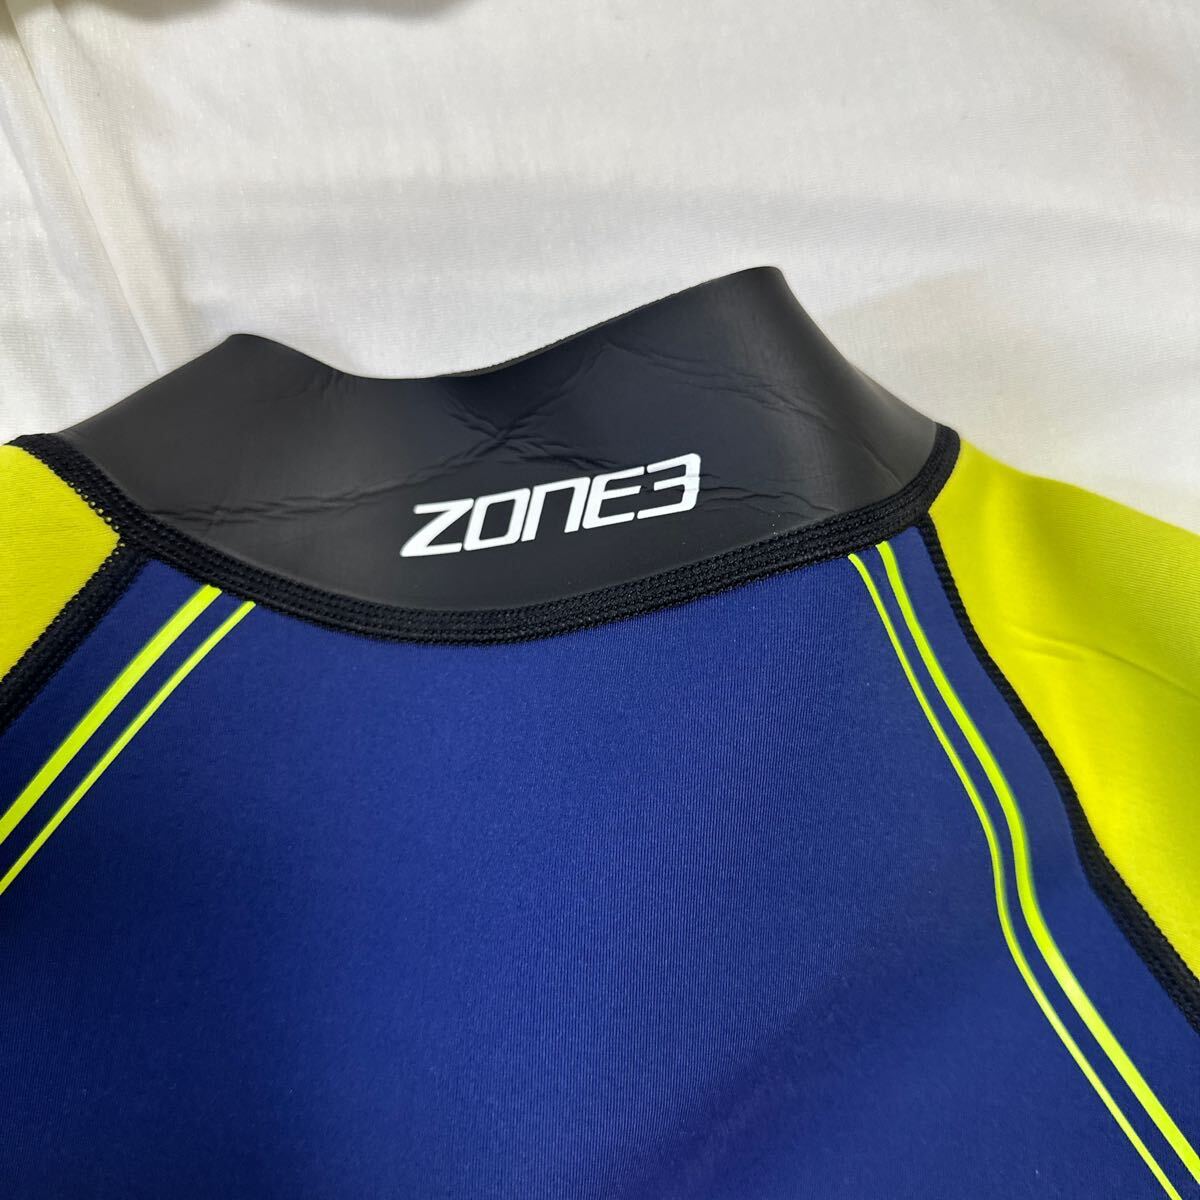 【試着のみ】ZONE3 ウェットスーツ 未使用 サイズL(XL) トライアスロン オープンウォーター XLワールドダイブ サーフ ダイビング _画像5